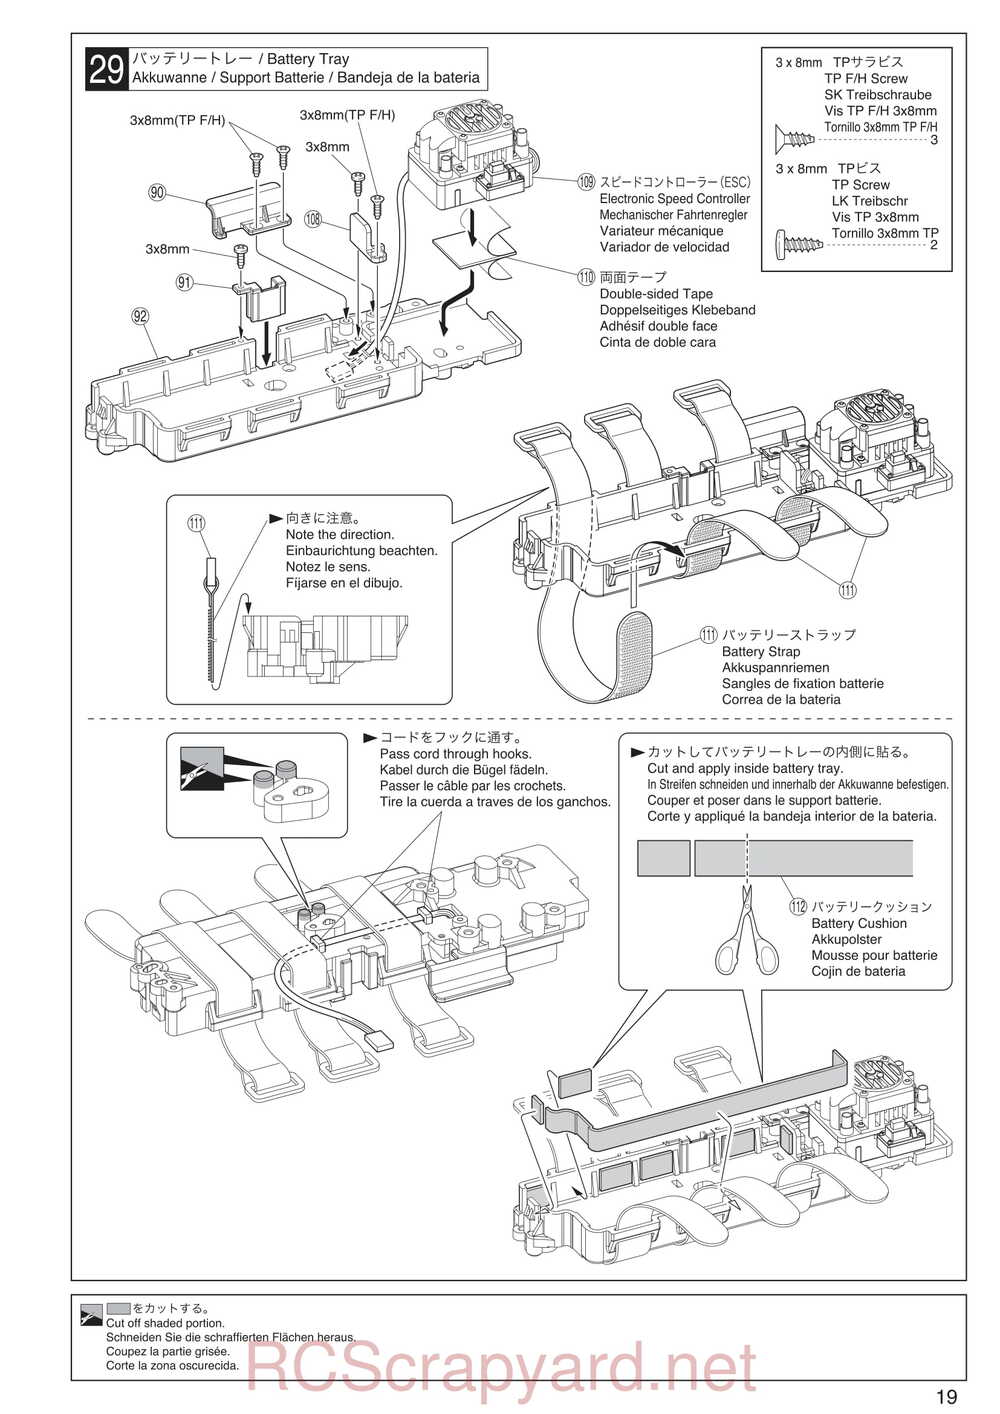 Kyosho - 30935 - Inferno GT2 VE Race-Spec - Manual - Page 19